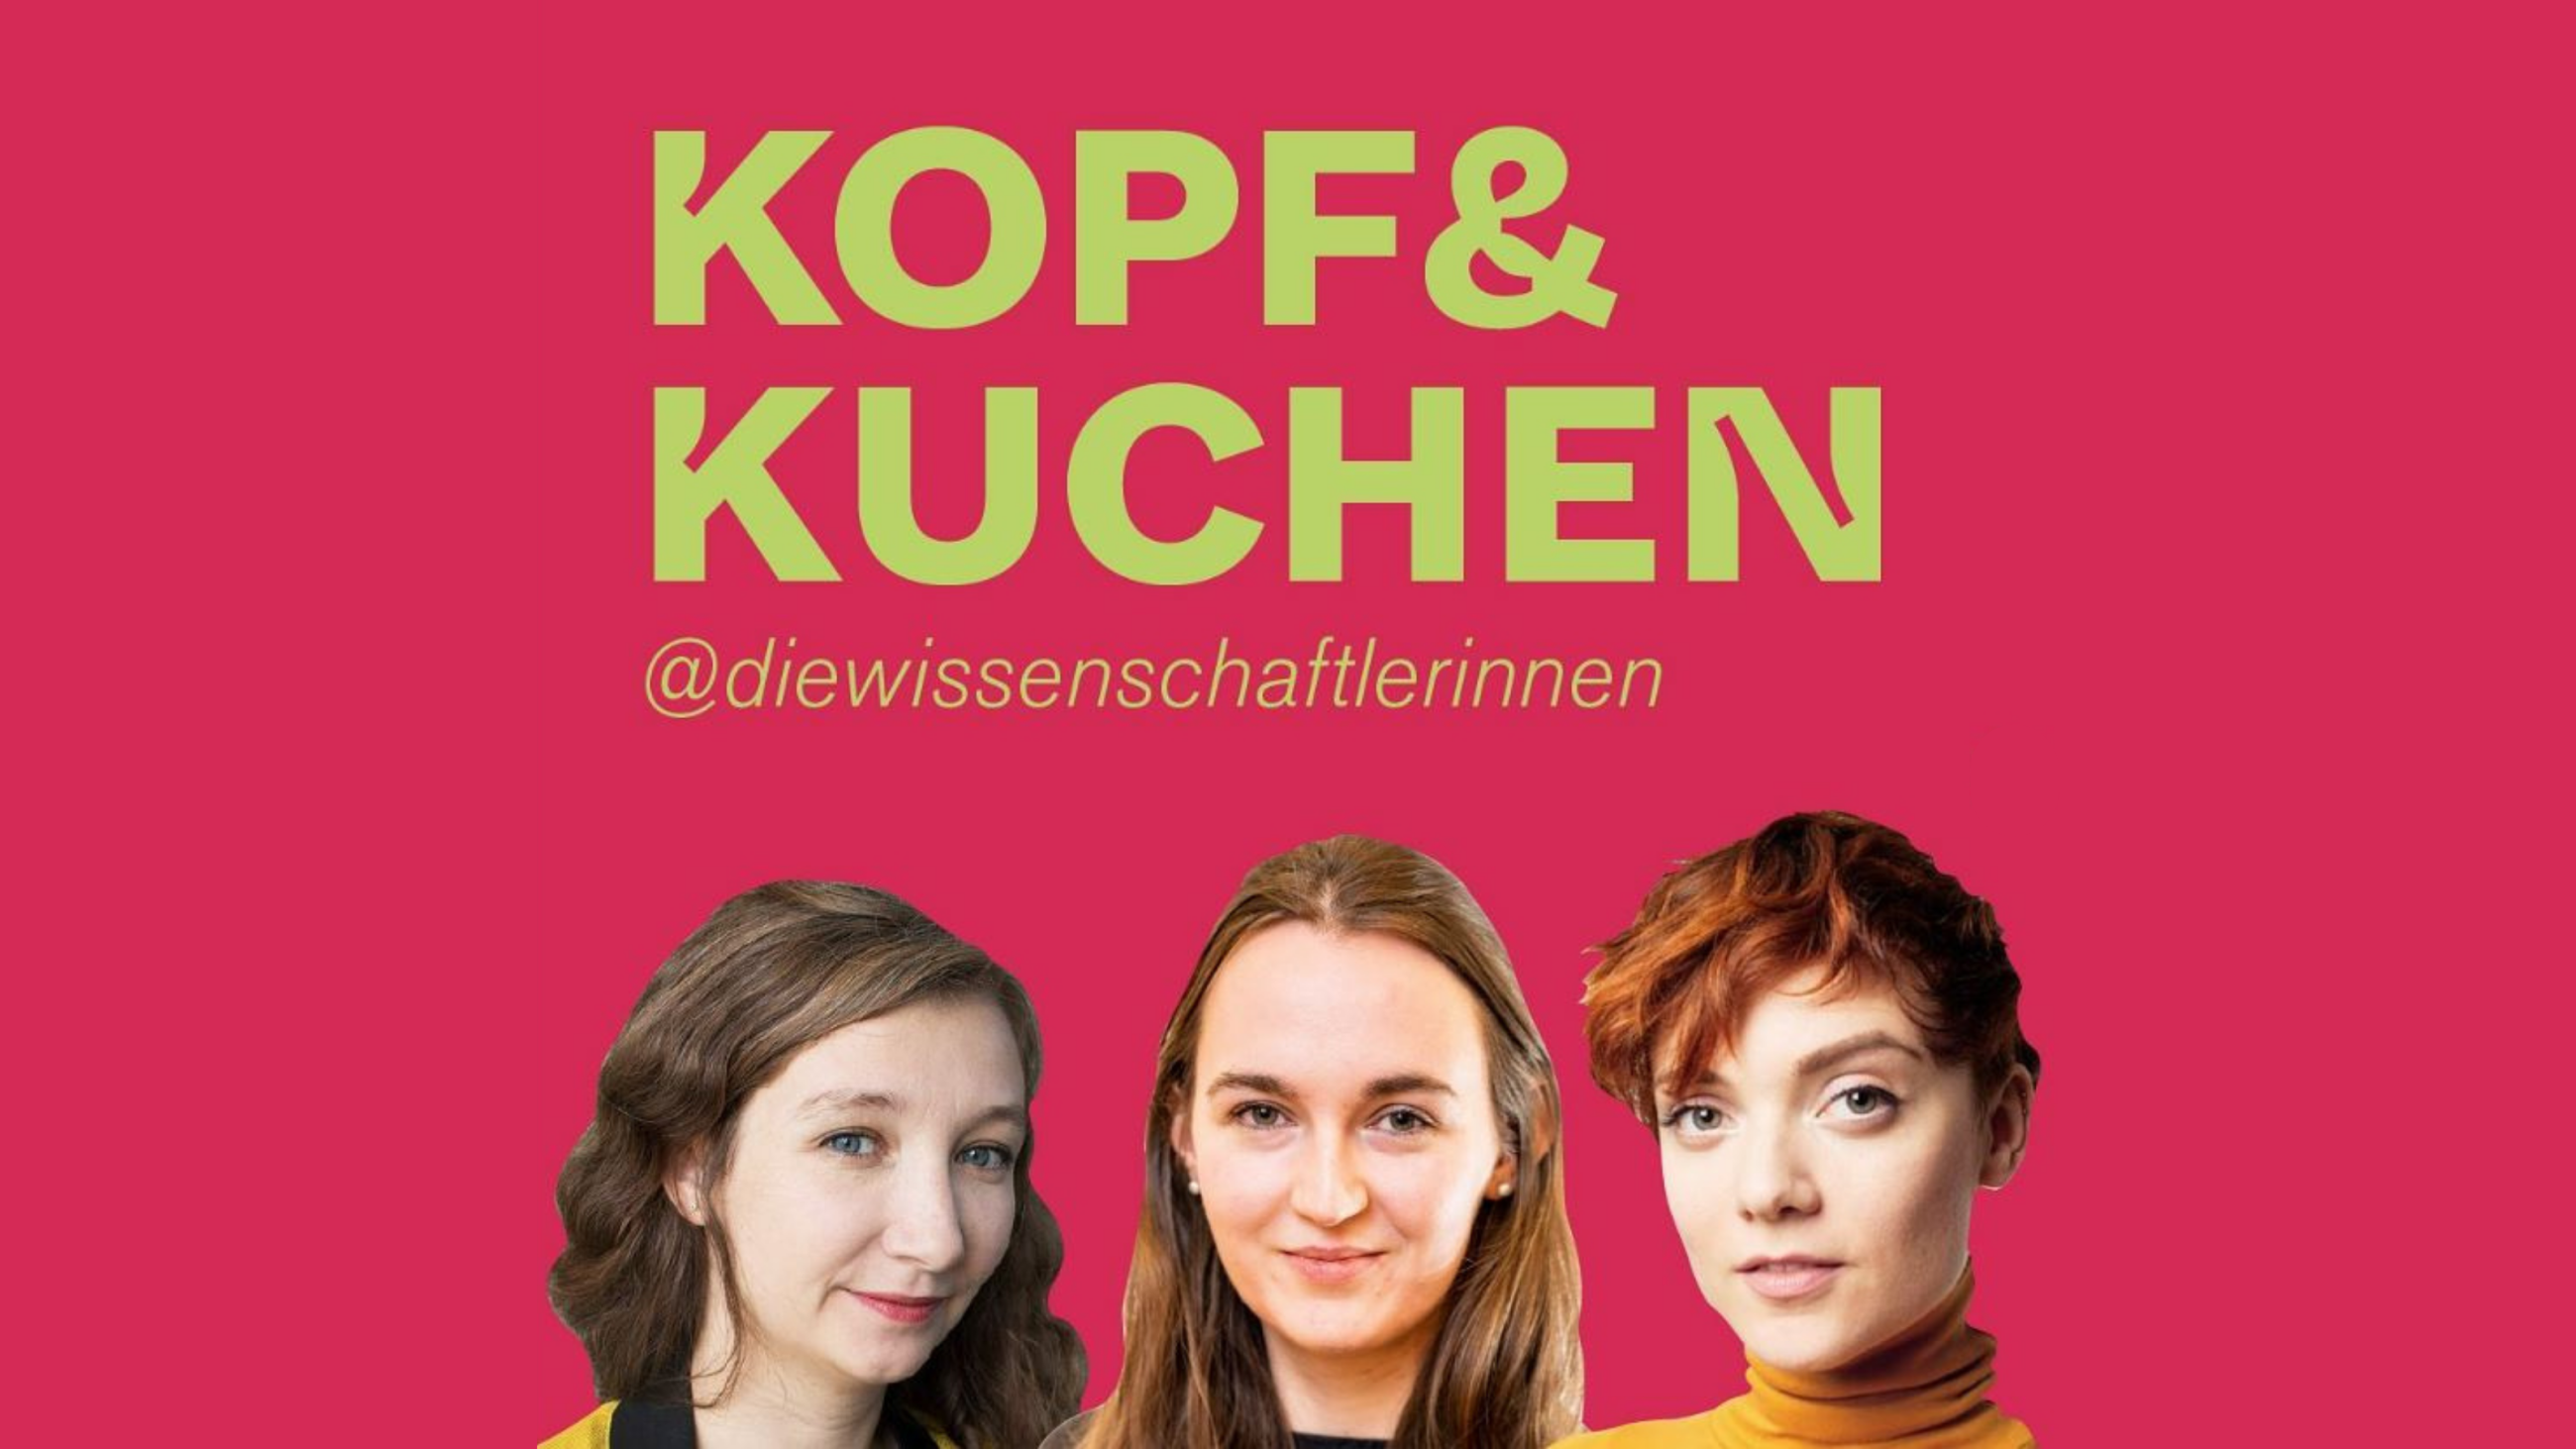 Text: "Kopf & Kuchen @diewissenschaftlerinnen", darunter montierte Portraits von Judith Ackermann, Anna-Sophie Barbutev und Anne-Kathrin Gerlieb